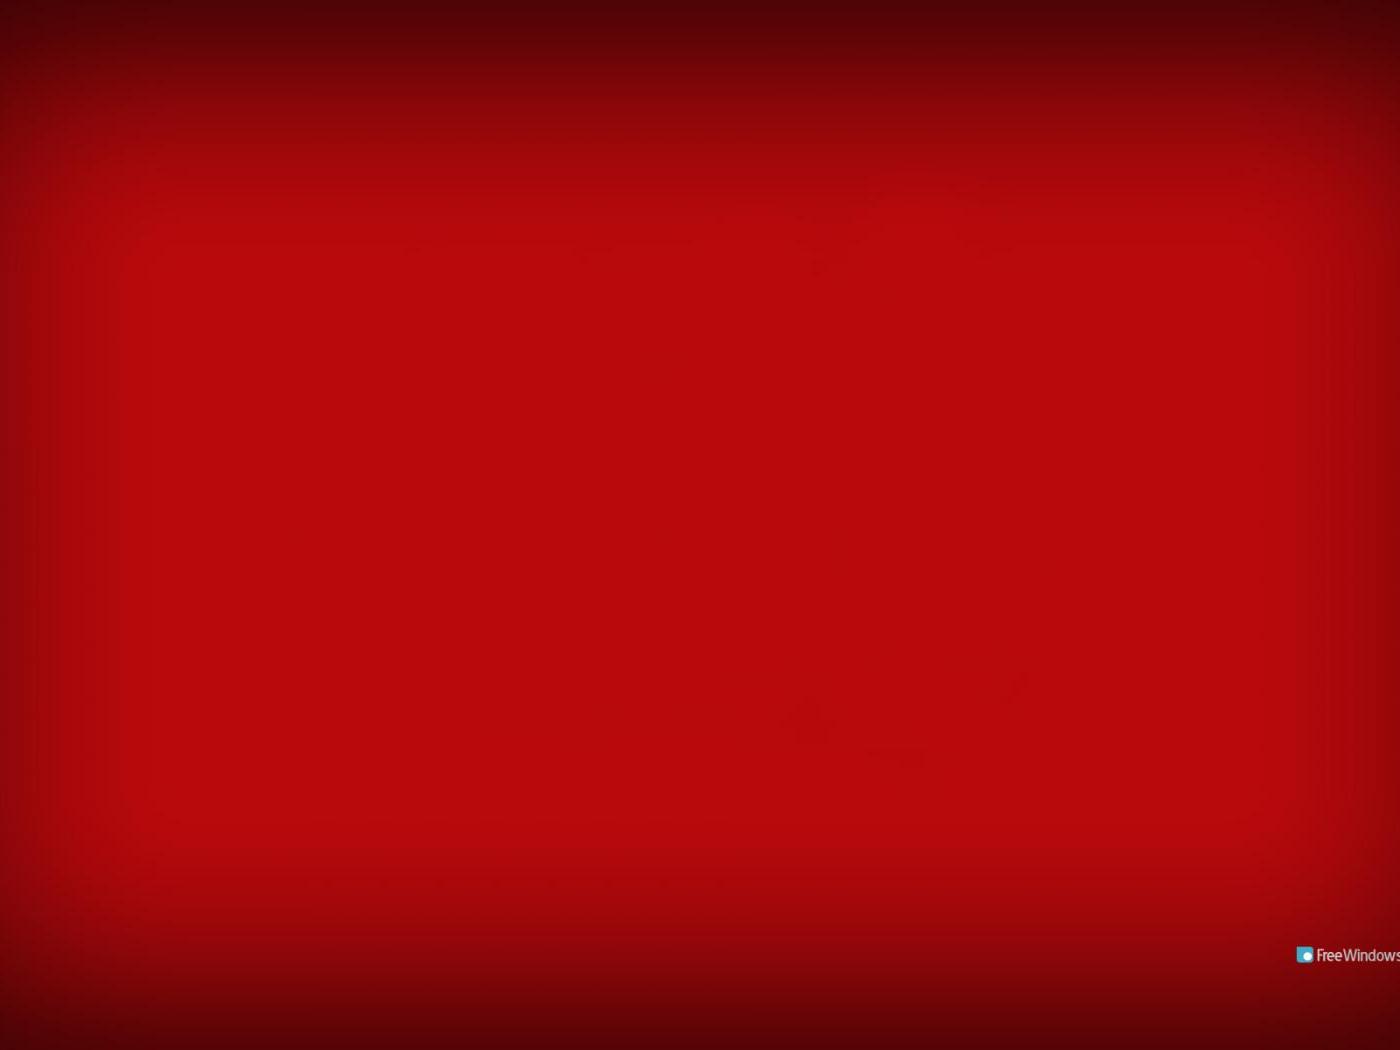 Solid Red Background wallpaper: Tạo điểm nhấn nổi bật trên màn hình của bạn bằng hình ảnh nền màu đỏ đậm. Hãy tạo sự chú ý với hình nền đơn giản nhưng rất mạnh mẽ và đẹp mắt này.